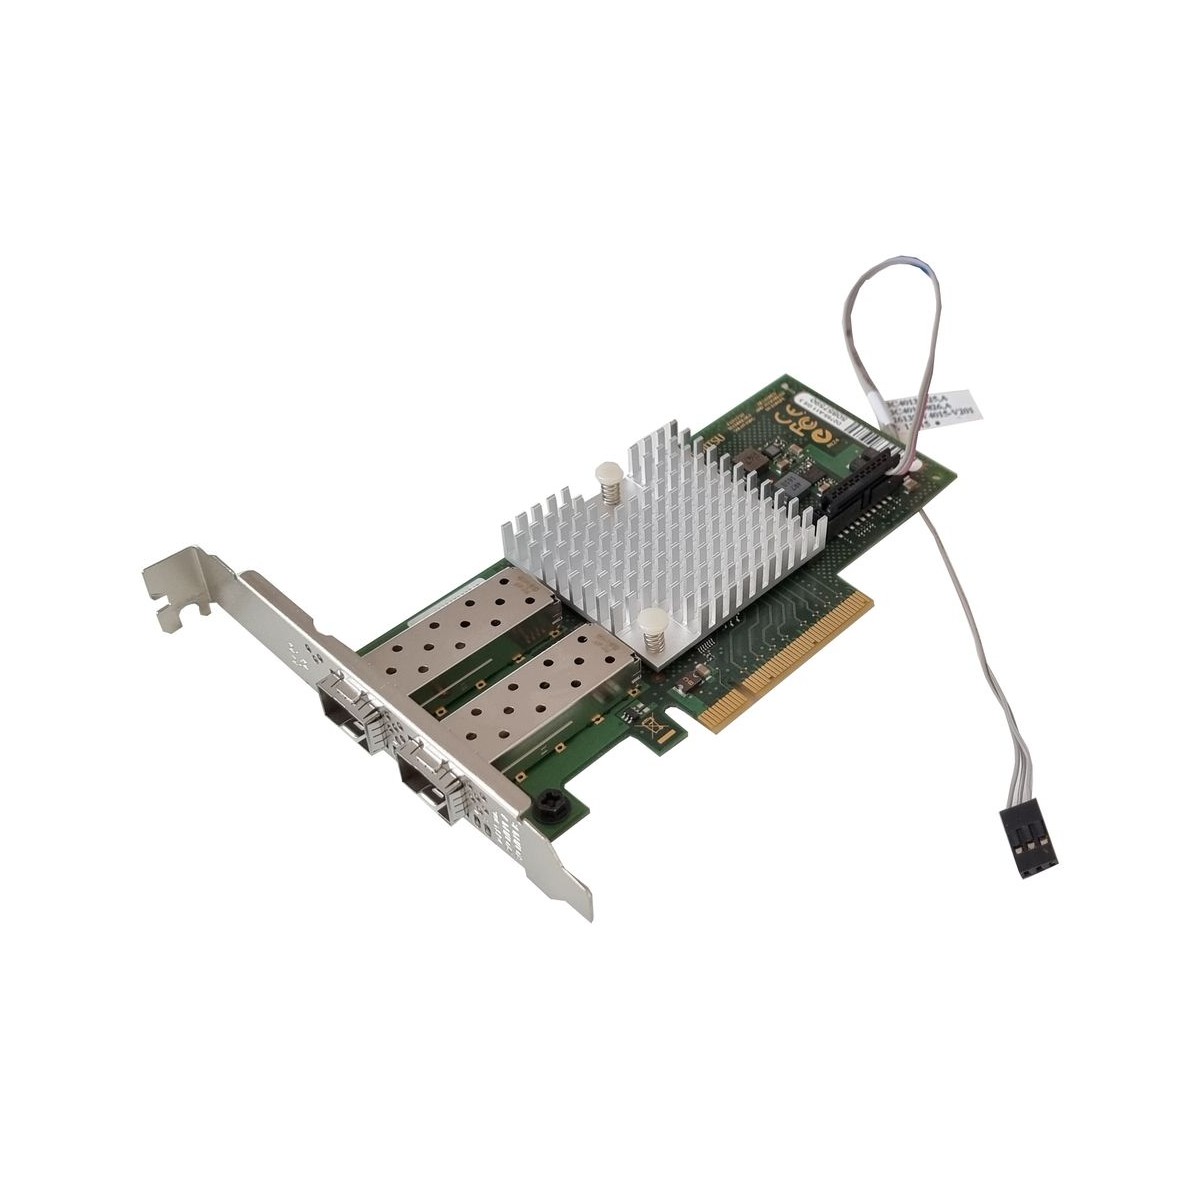 KARTA SIECIOWA FUJITSU D2755-A11 2x10GB PCIe FULL